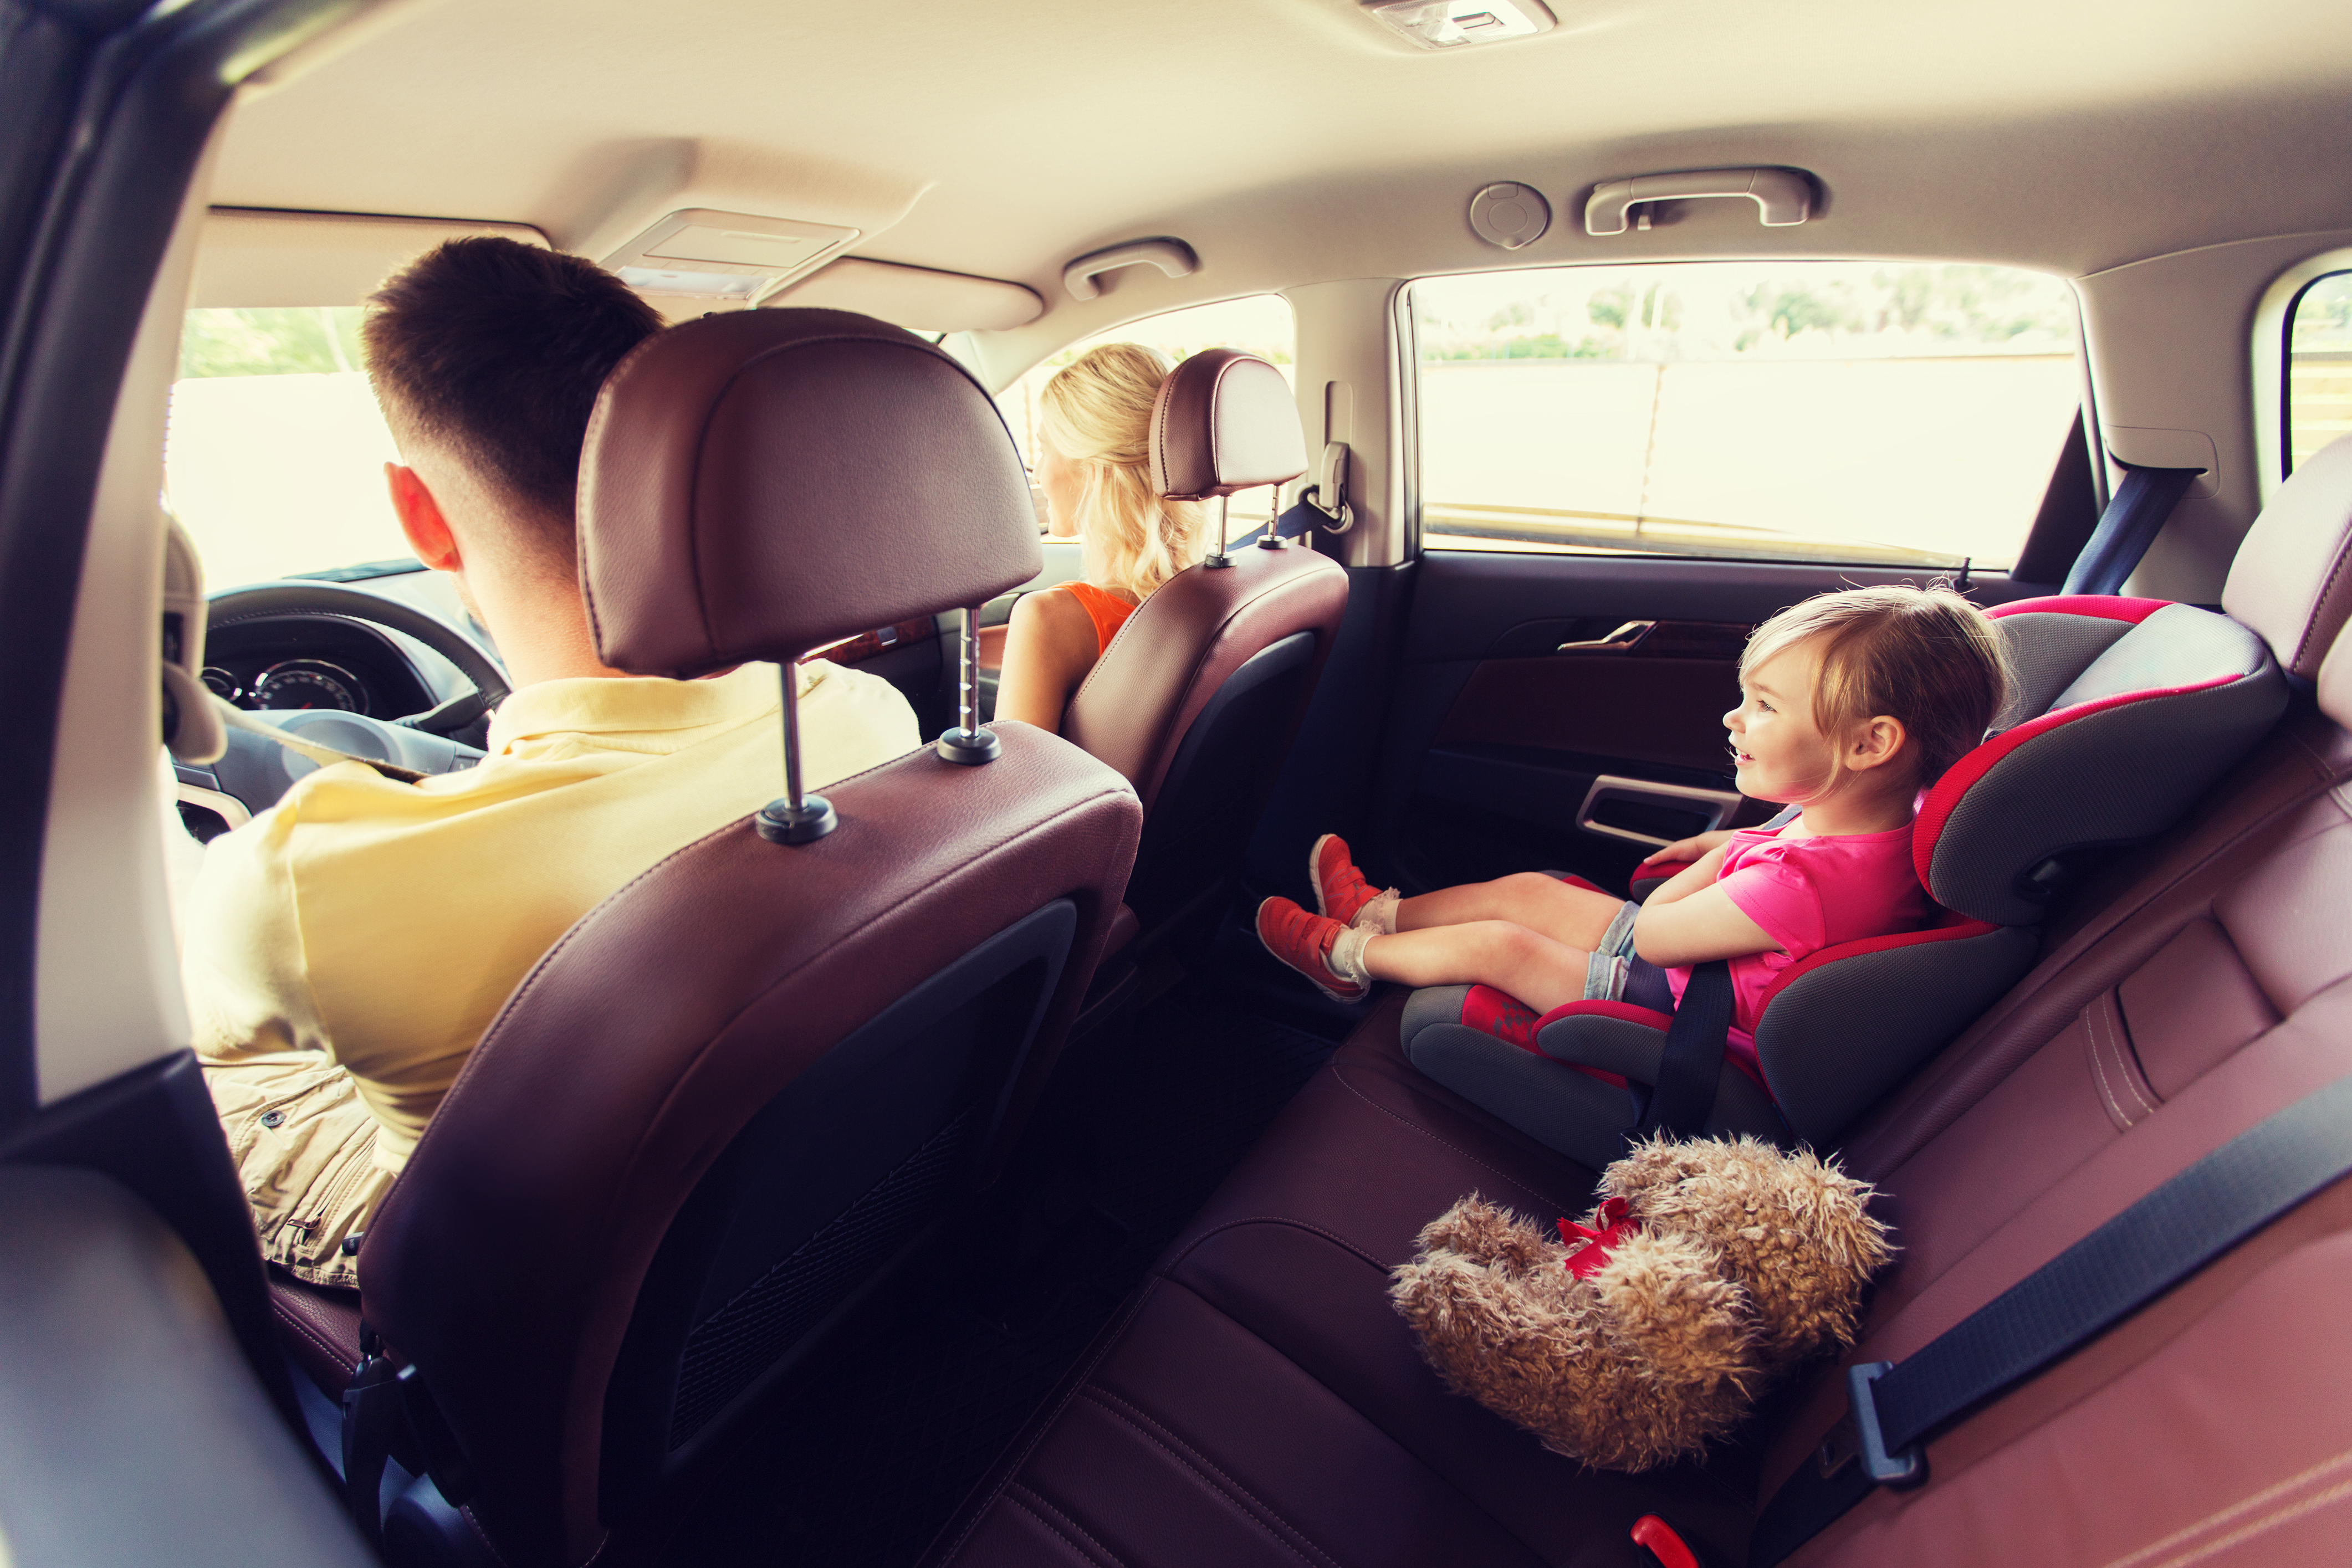 La seguridad del niño pasajero es extremadamente importante. Sin embargo, se ha descubierto que algunos padres optan por no usar asientos de serguridad